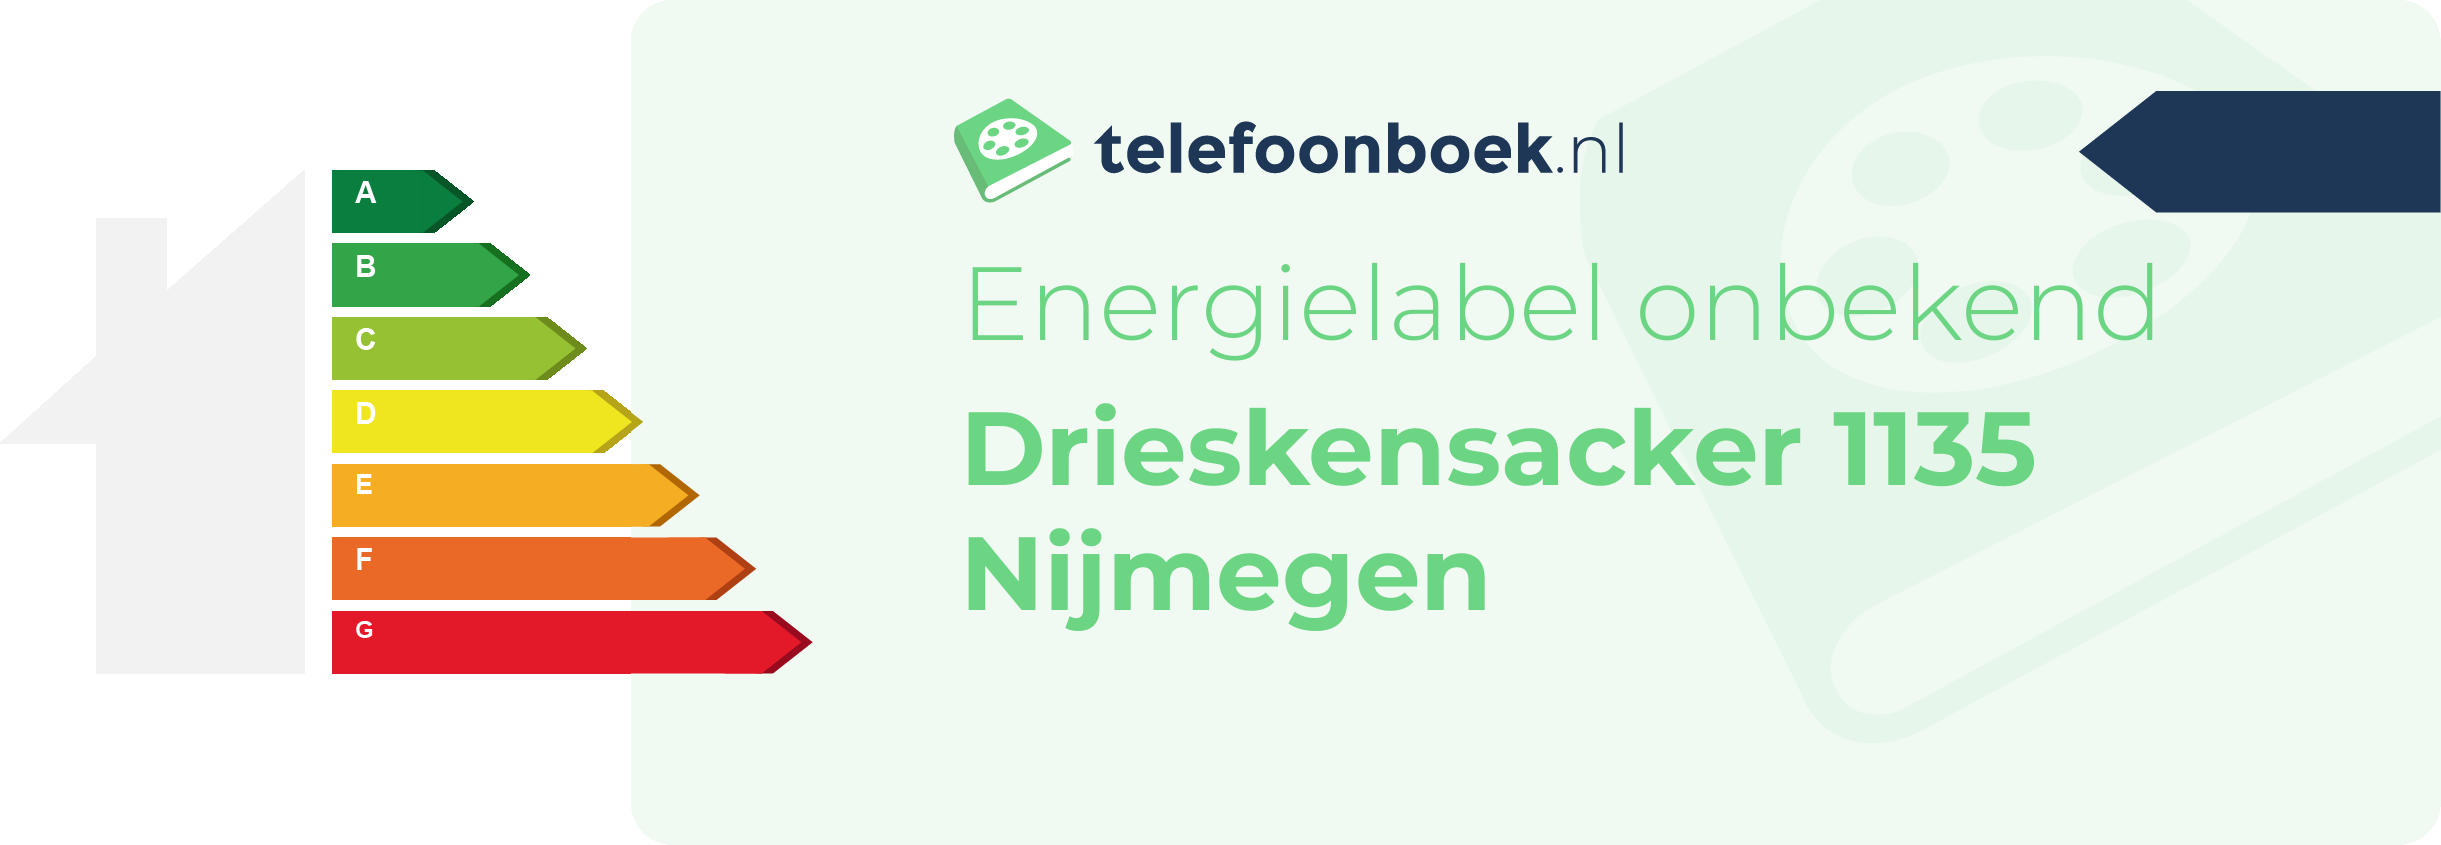 Energielabel Drieskensacker 1135 Nijmegen